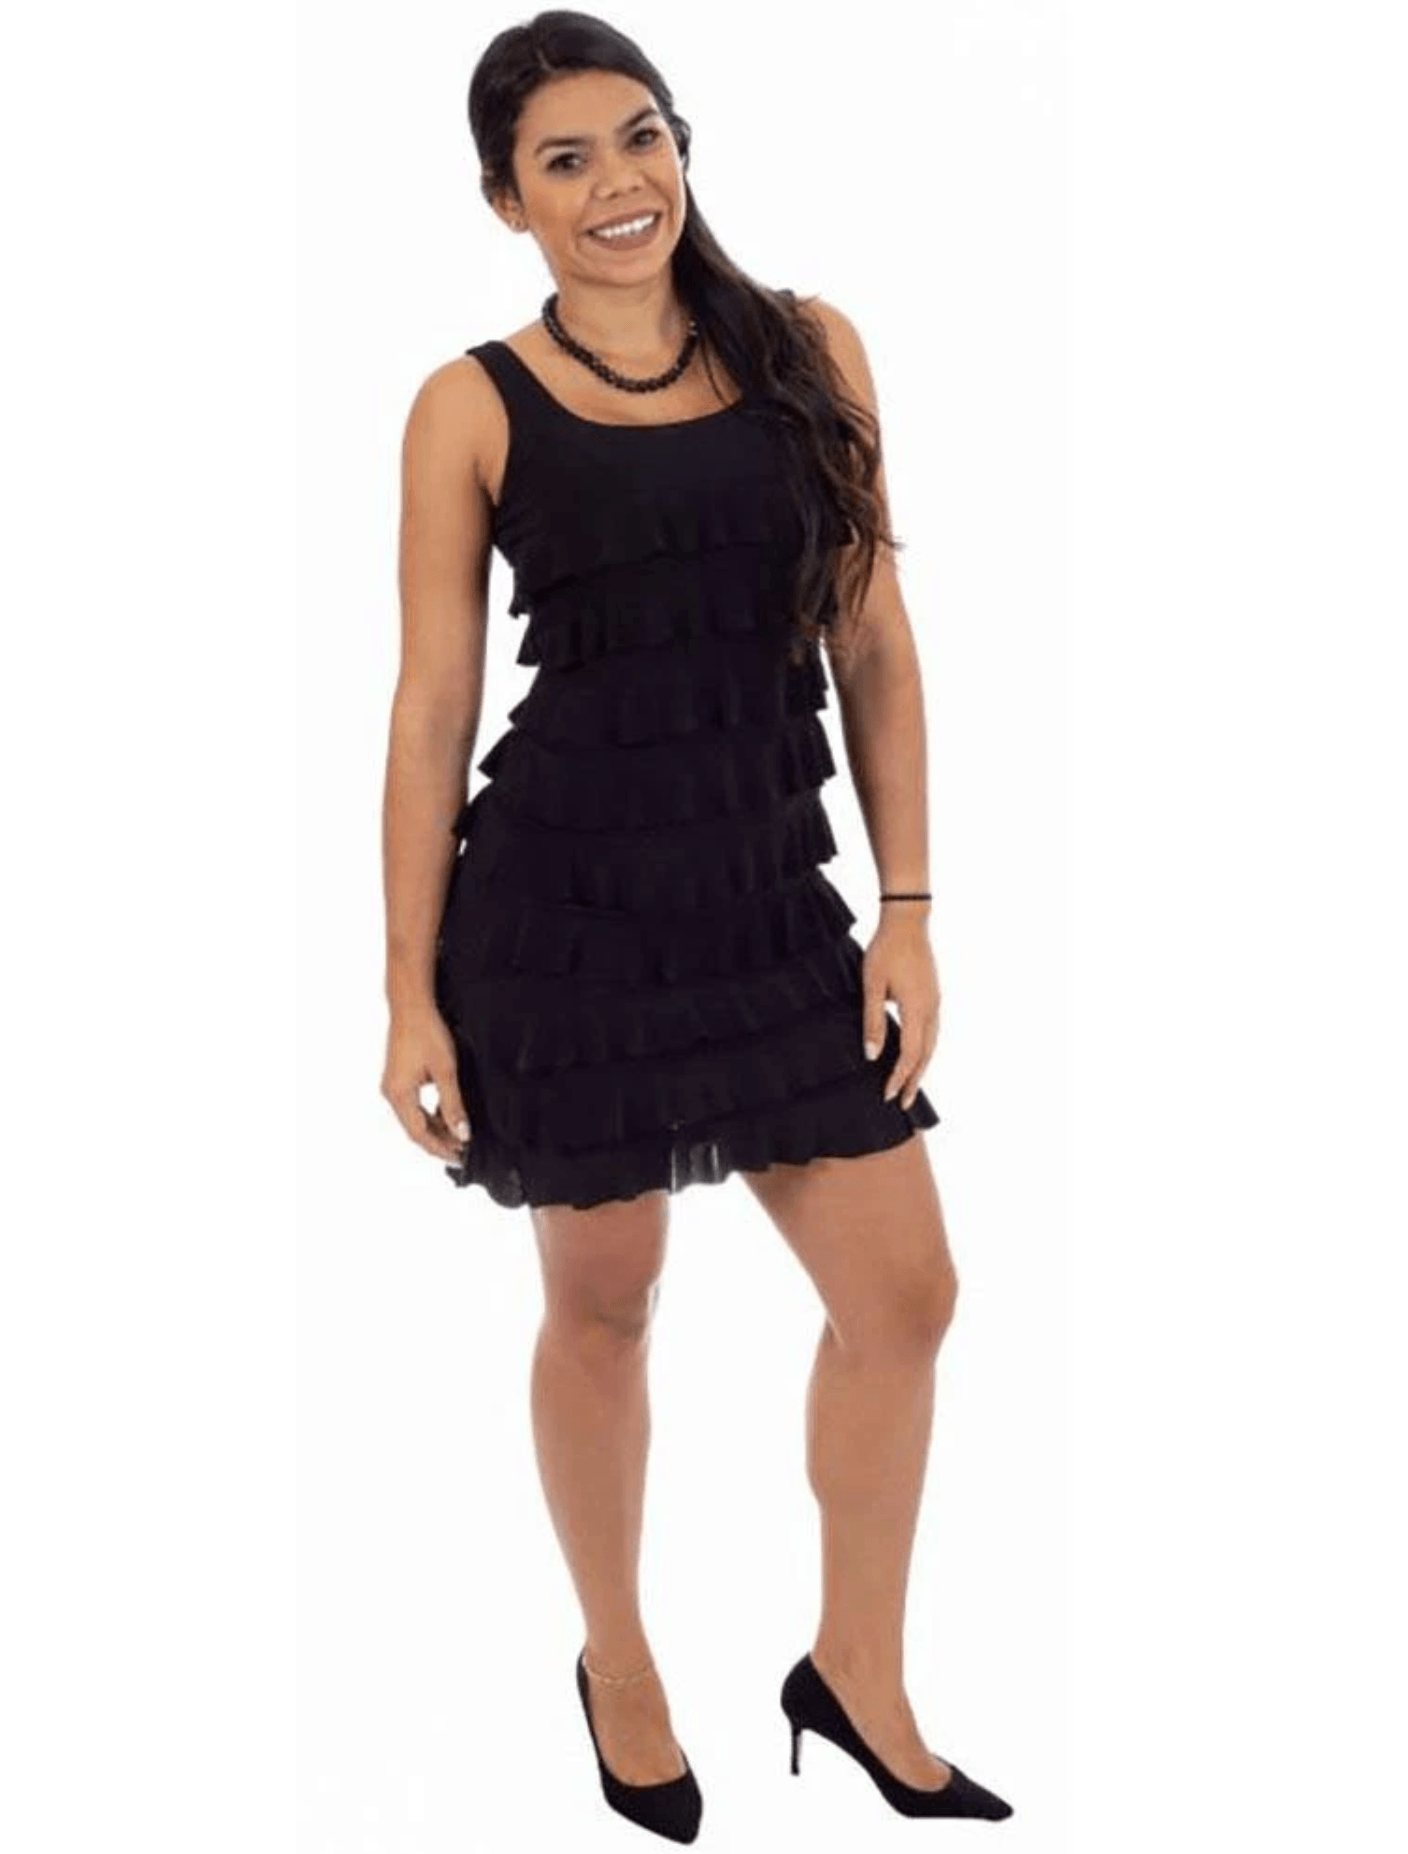 Fashque Black Ruffle Dress - Lion's Lair Boutique - 1X, ALT, continuity, DRR, L, M, S, XL, XS - Fashque